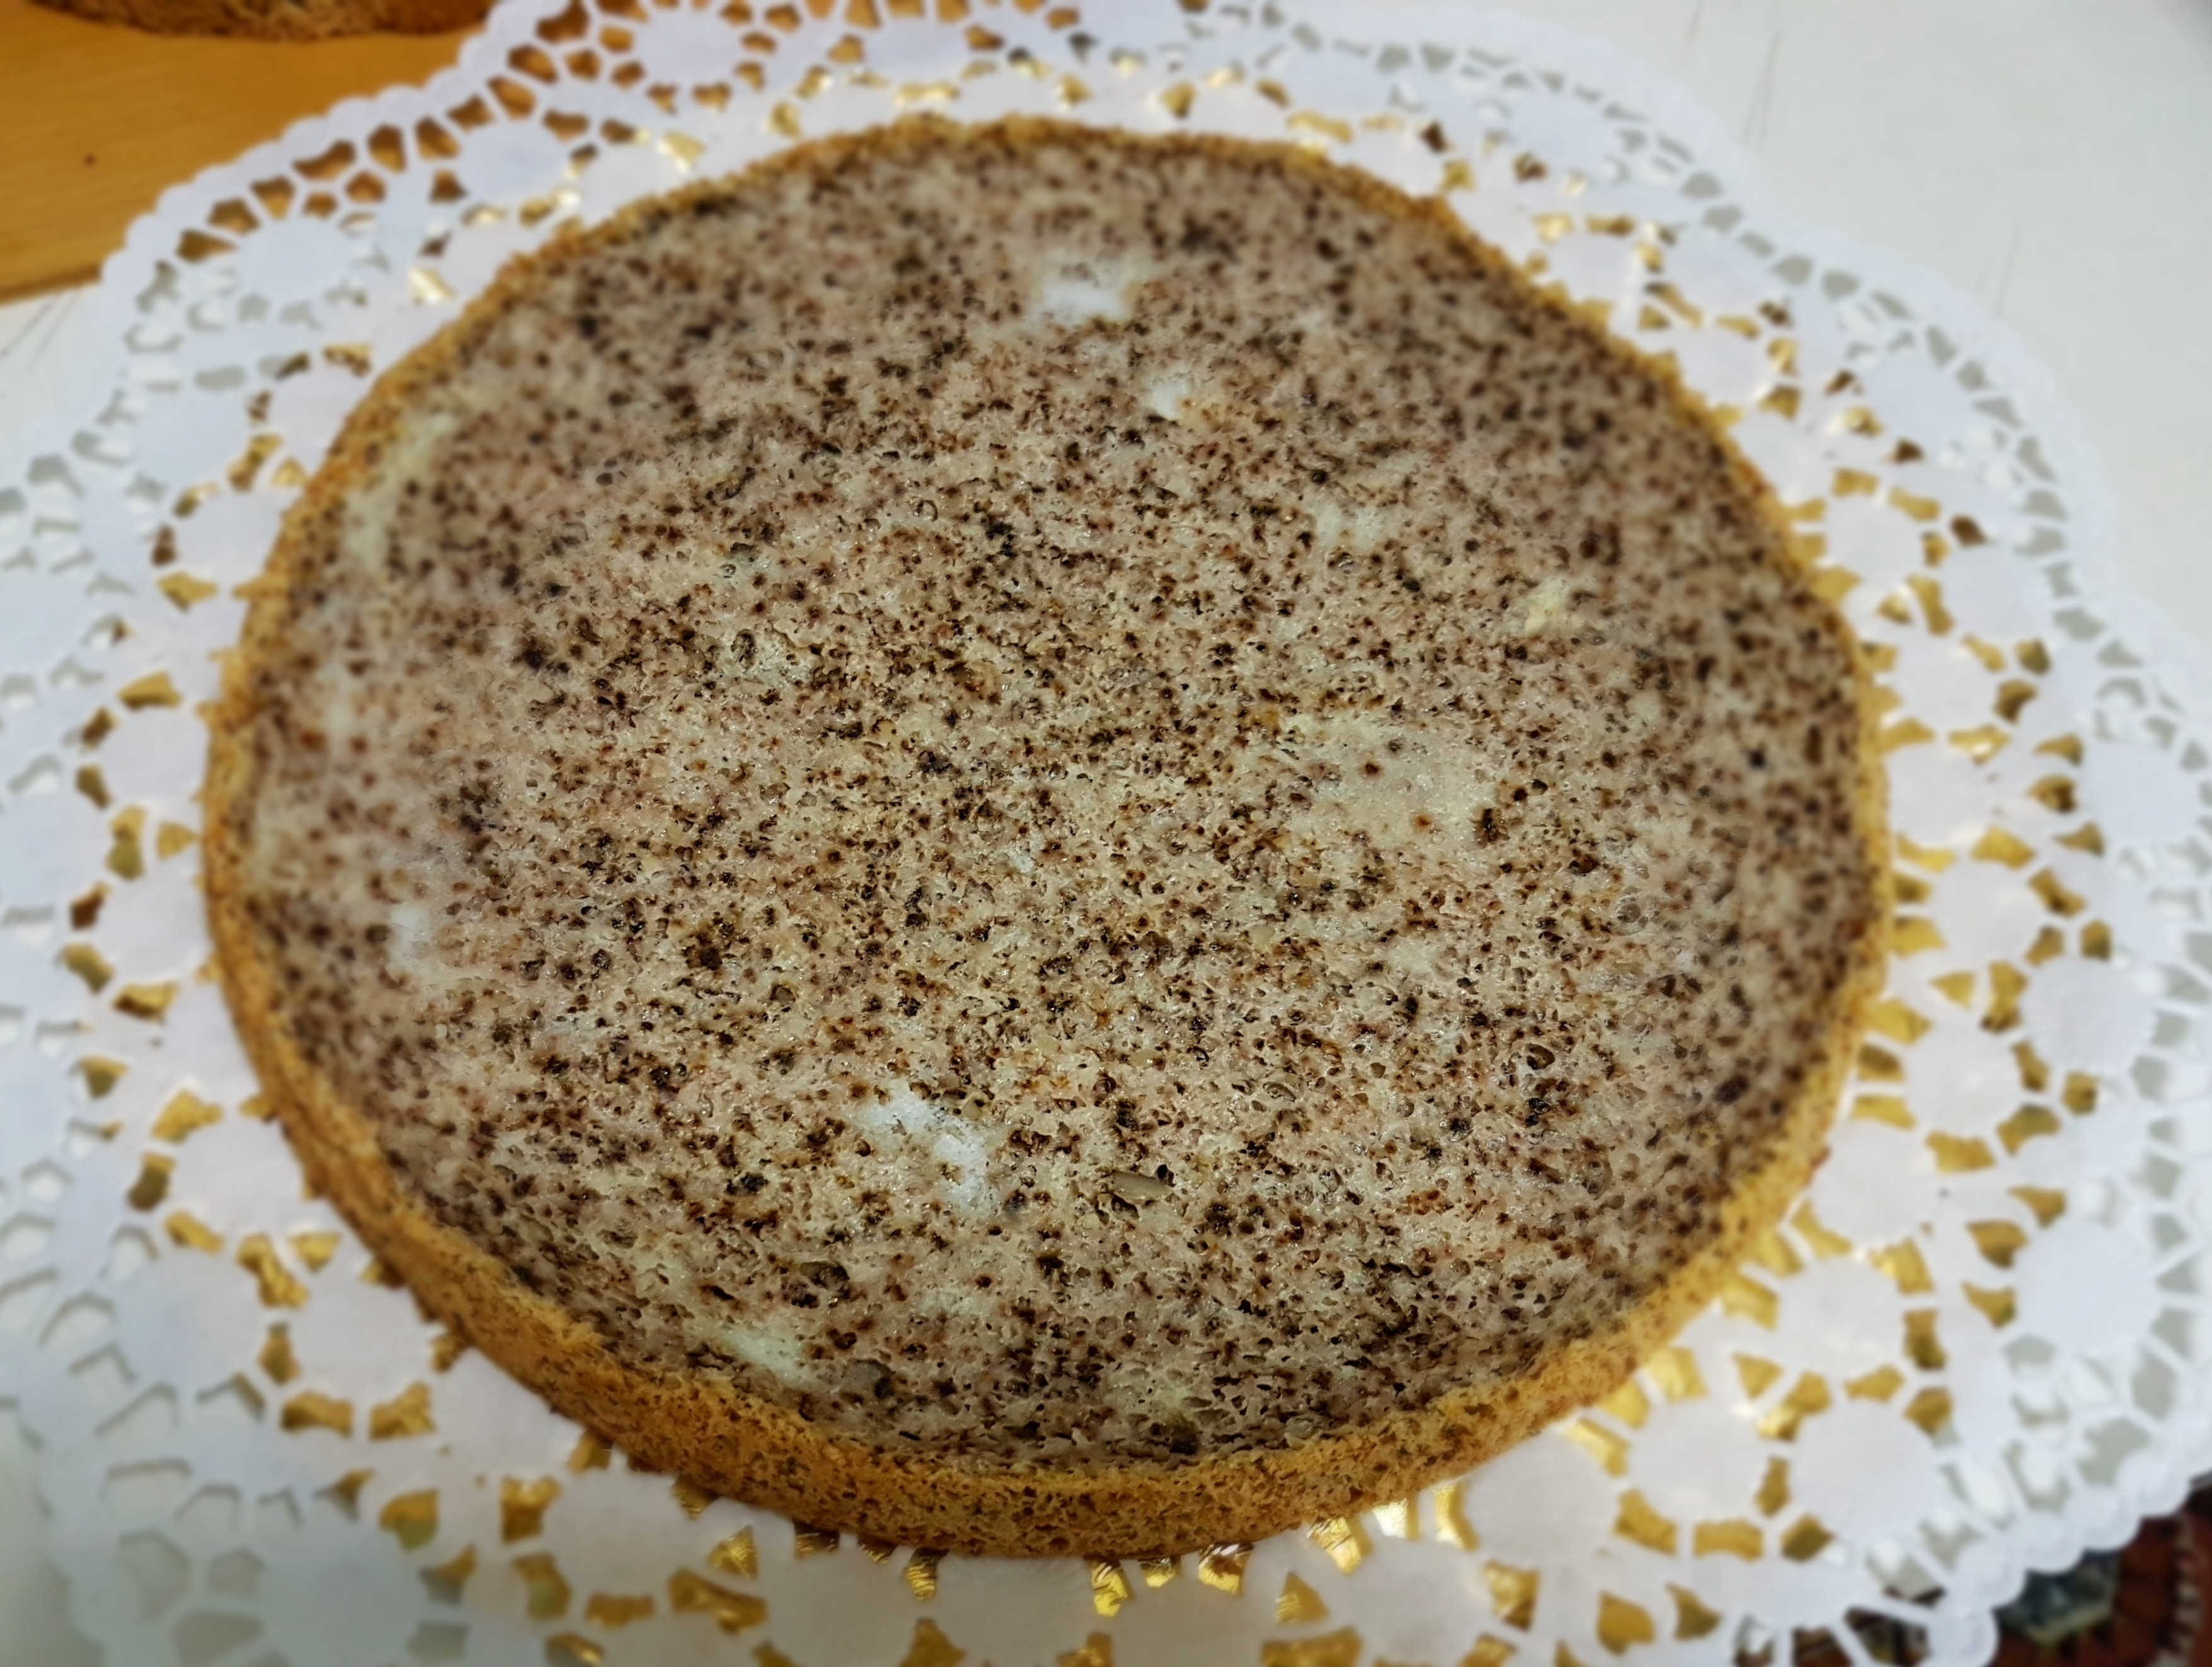 Desert tort cu crema de vanilie si jeleu de fructe de padure - 2018